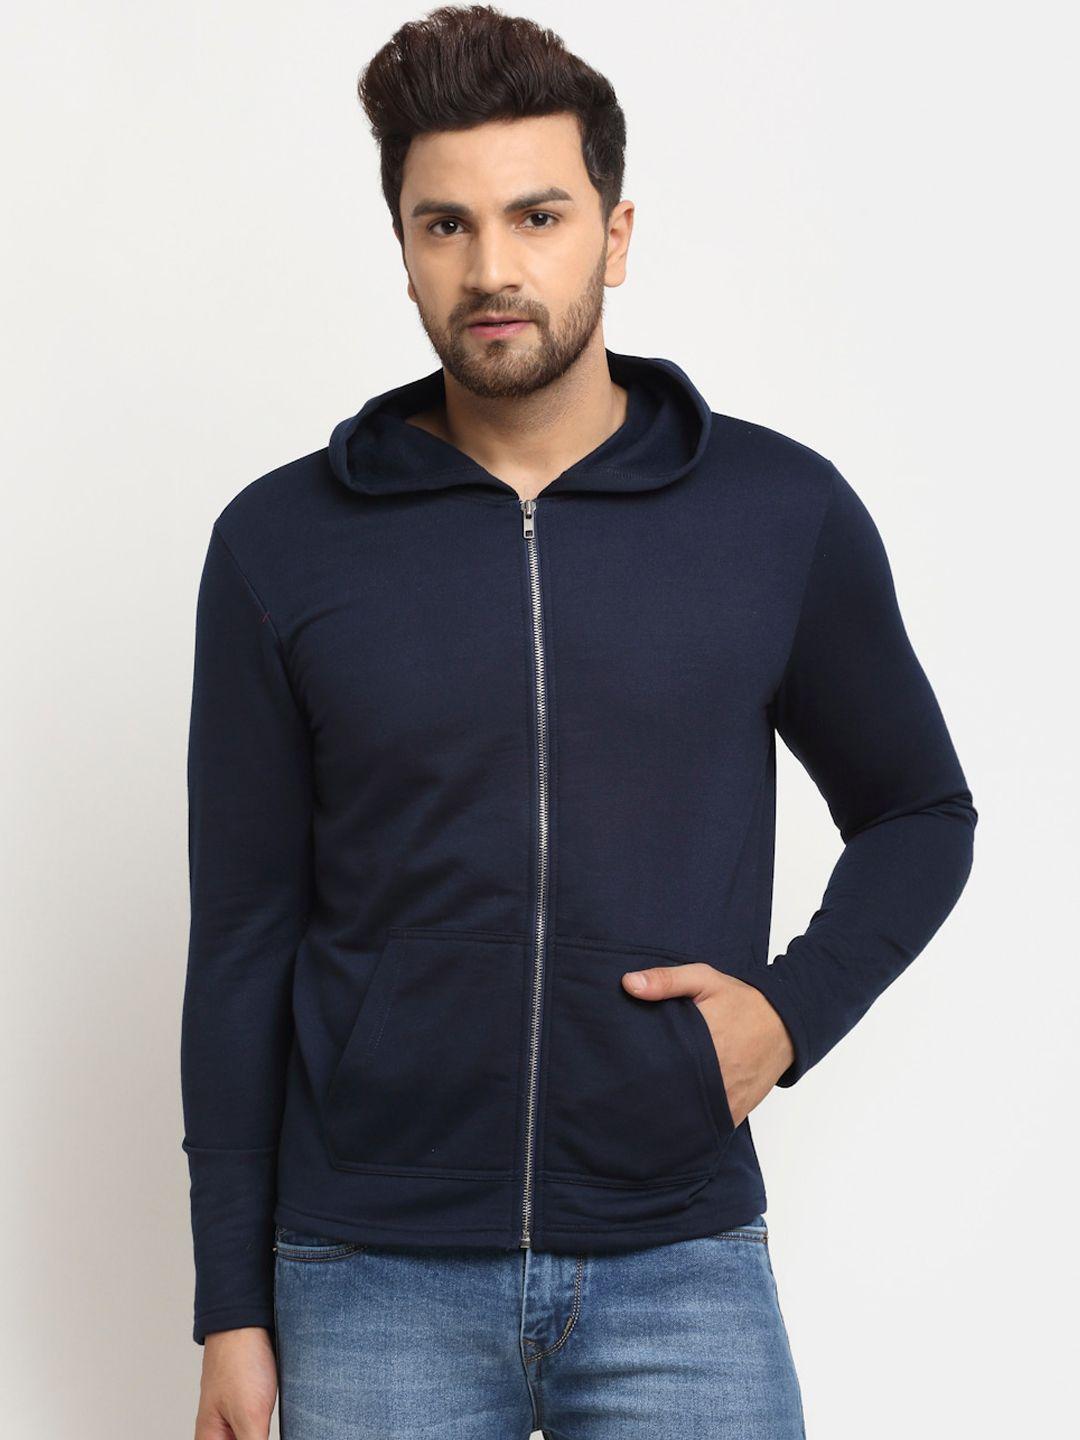 door74 men navy blue hooded sweatshirt